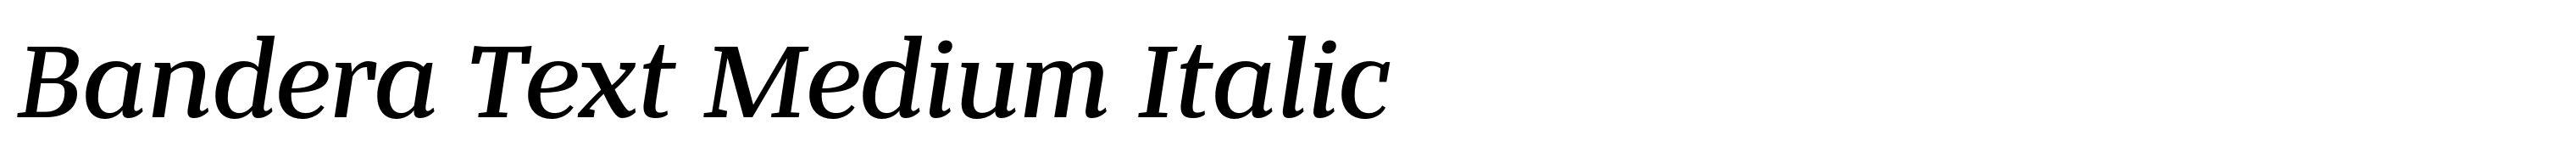 Bandera Text Medium Italic